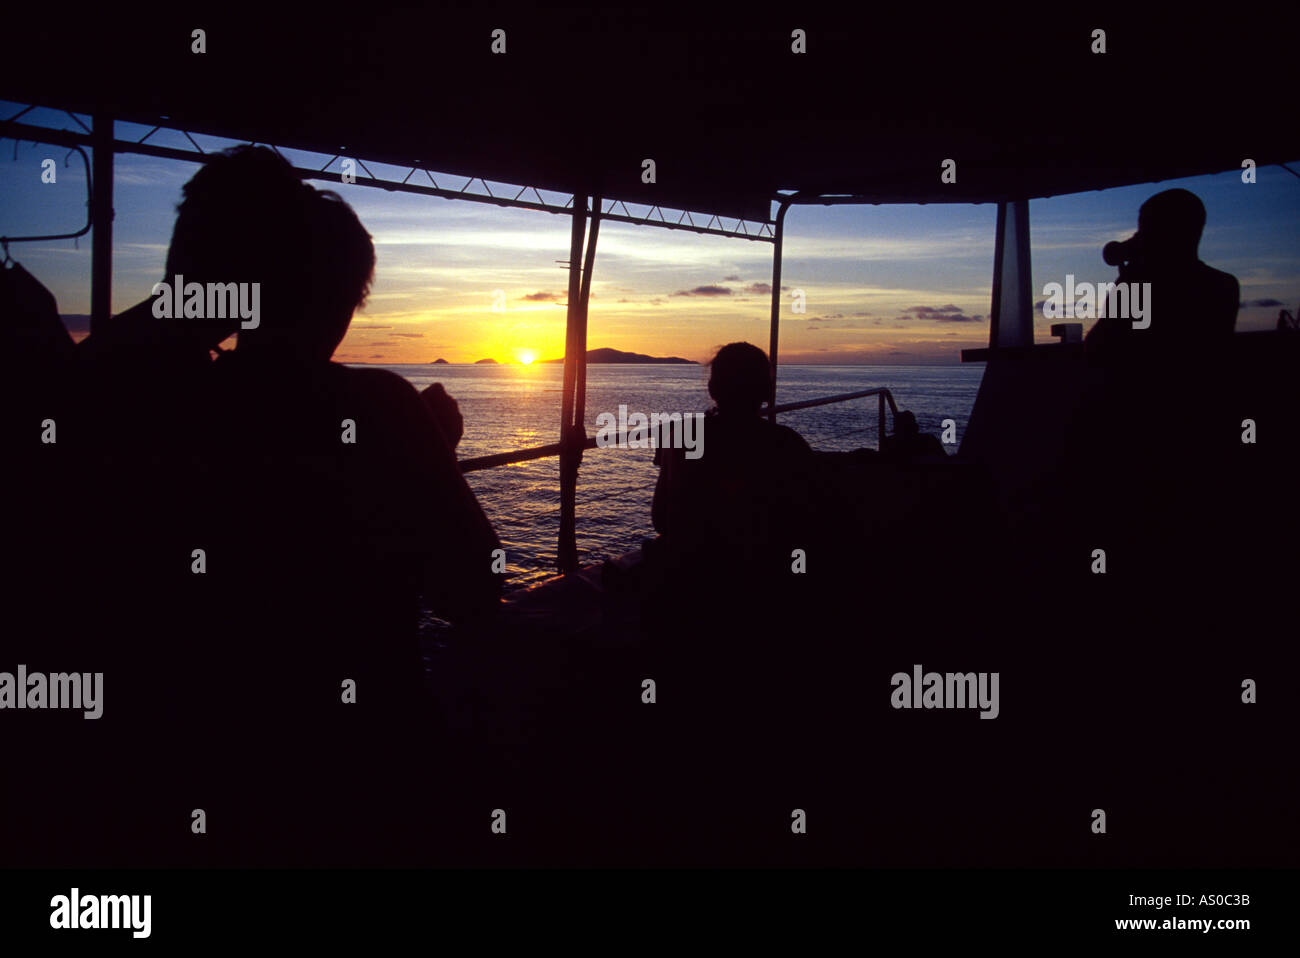 Romantischen Abend Sonnenuntergang Silhouette auf See am Great Barrier Reef Coral Sea Australien Stockfoto